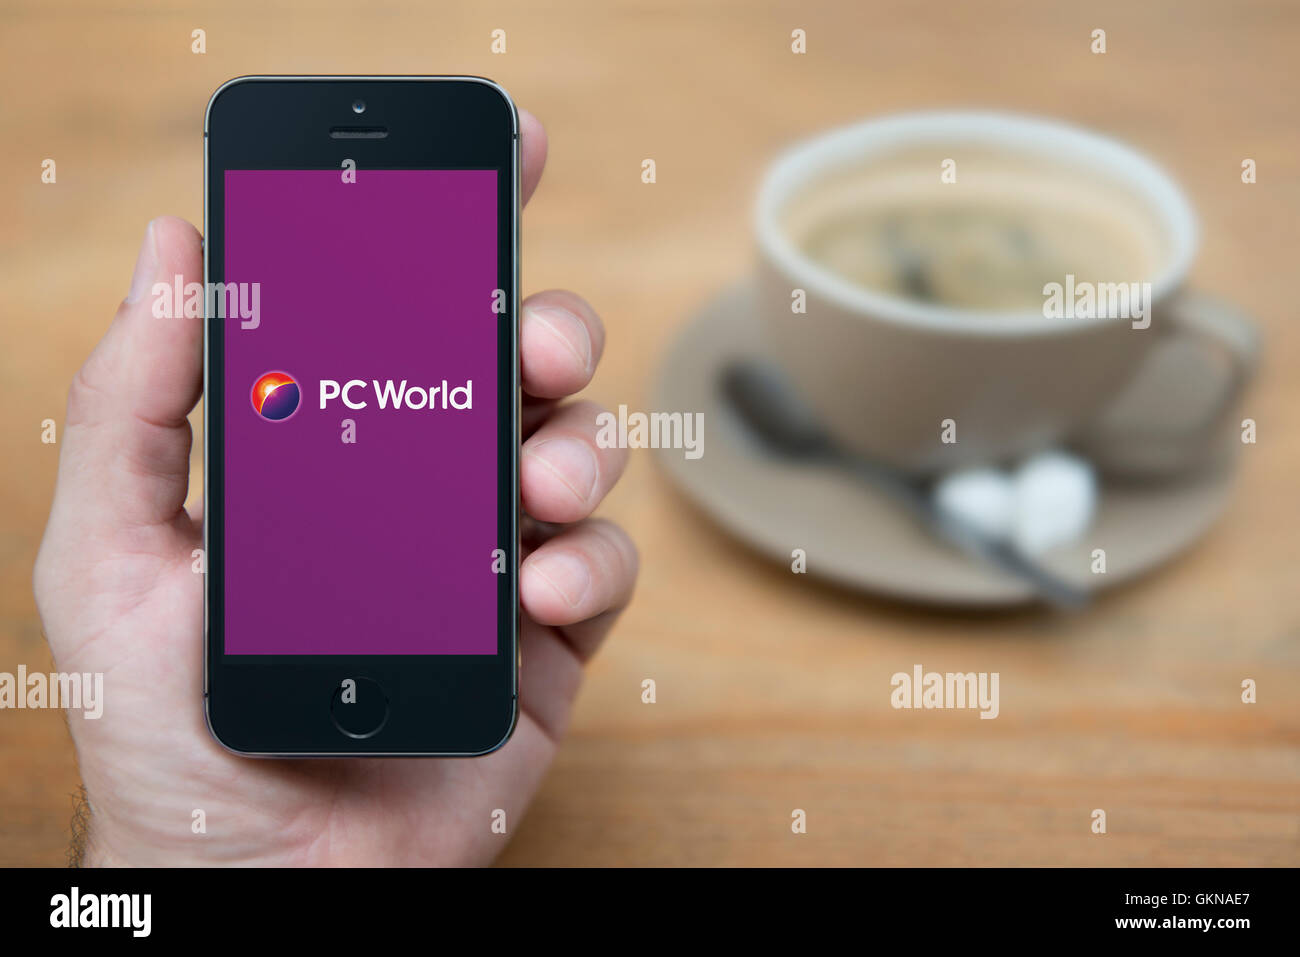 Un homme se penche sur son iPhone qui affiche le logo PC World, alors qu'assis avec une tasse de café (usage éditorial uniquement). Banque D'Images